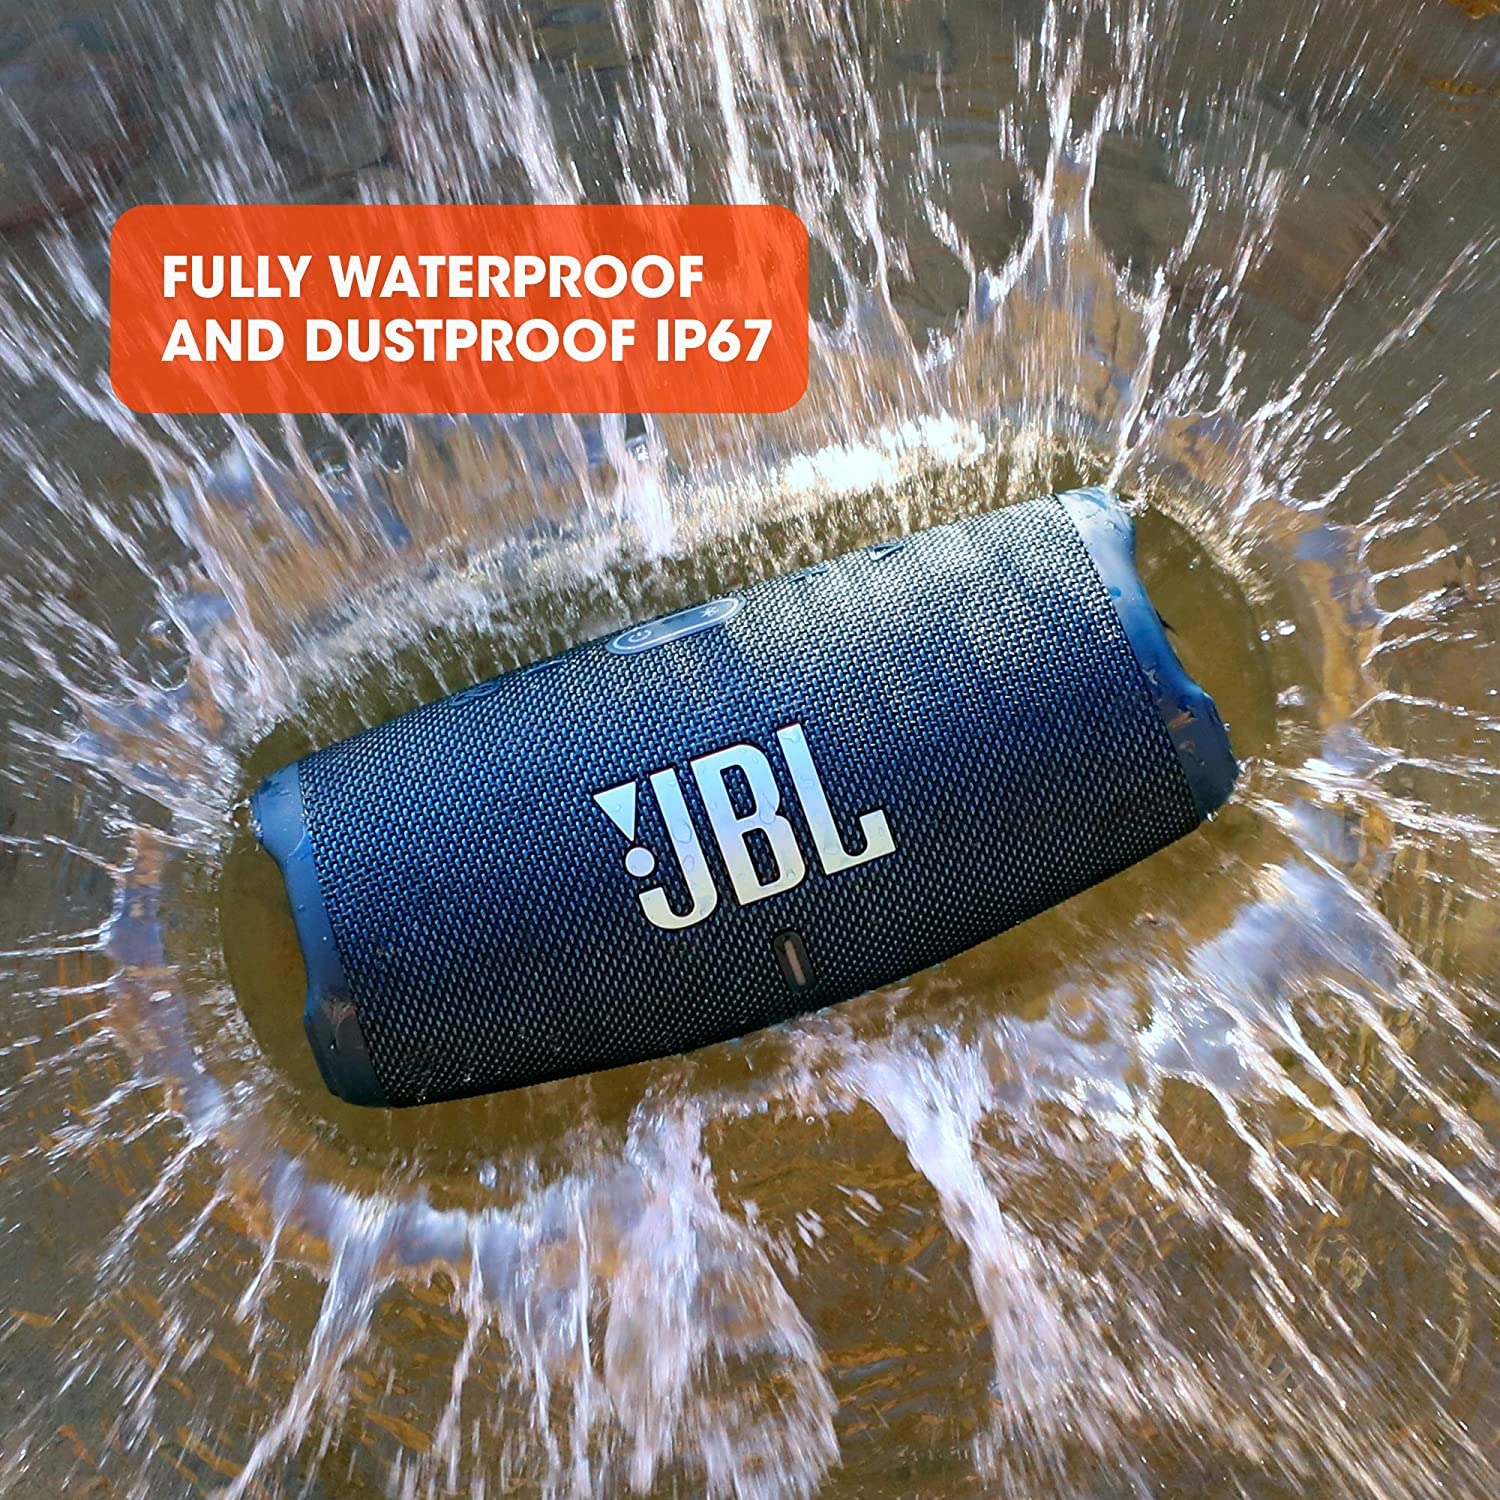 مكبر صوت لاسلكي مقاوم للماء لون زيتي JBL Charge5 Splashproof Portable Bluetooth Speaker - JBL